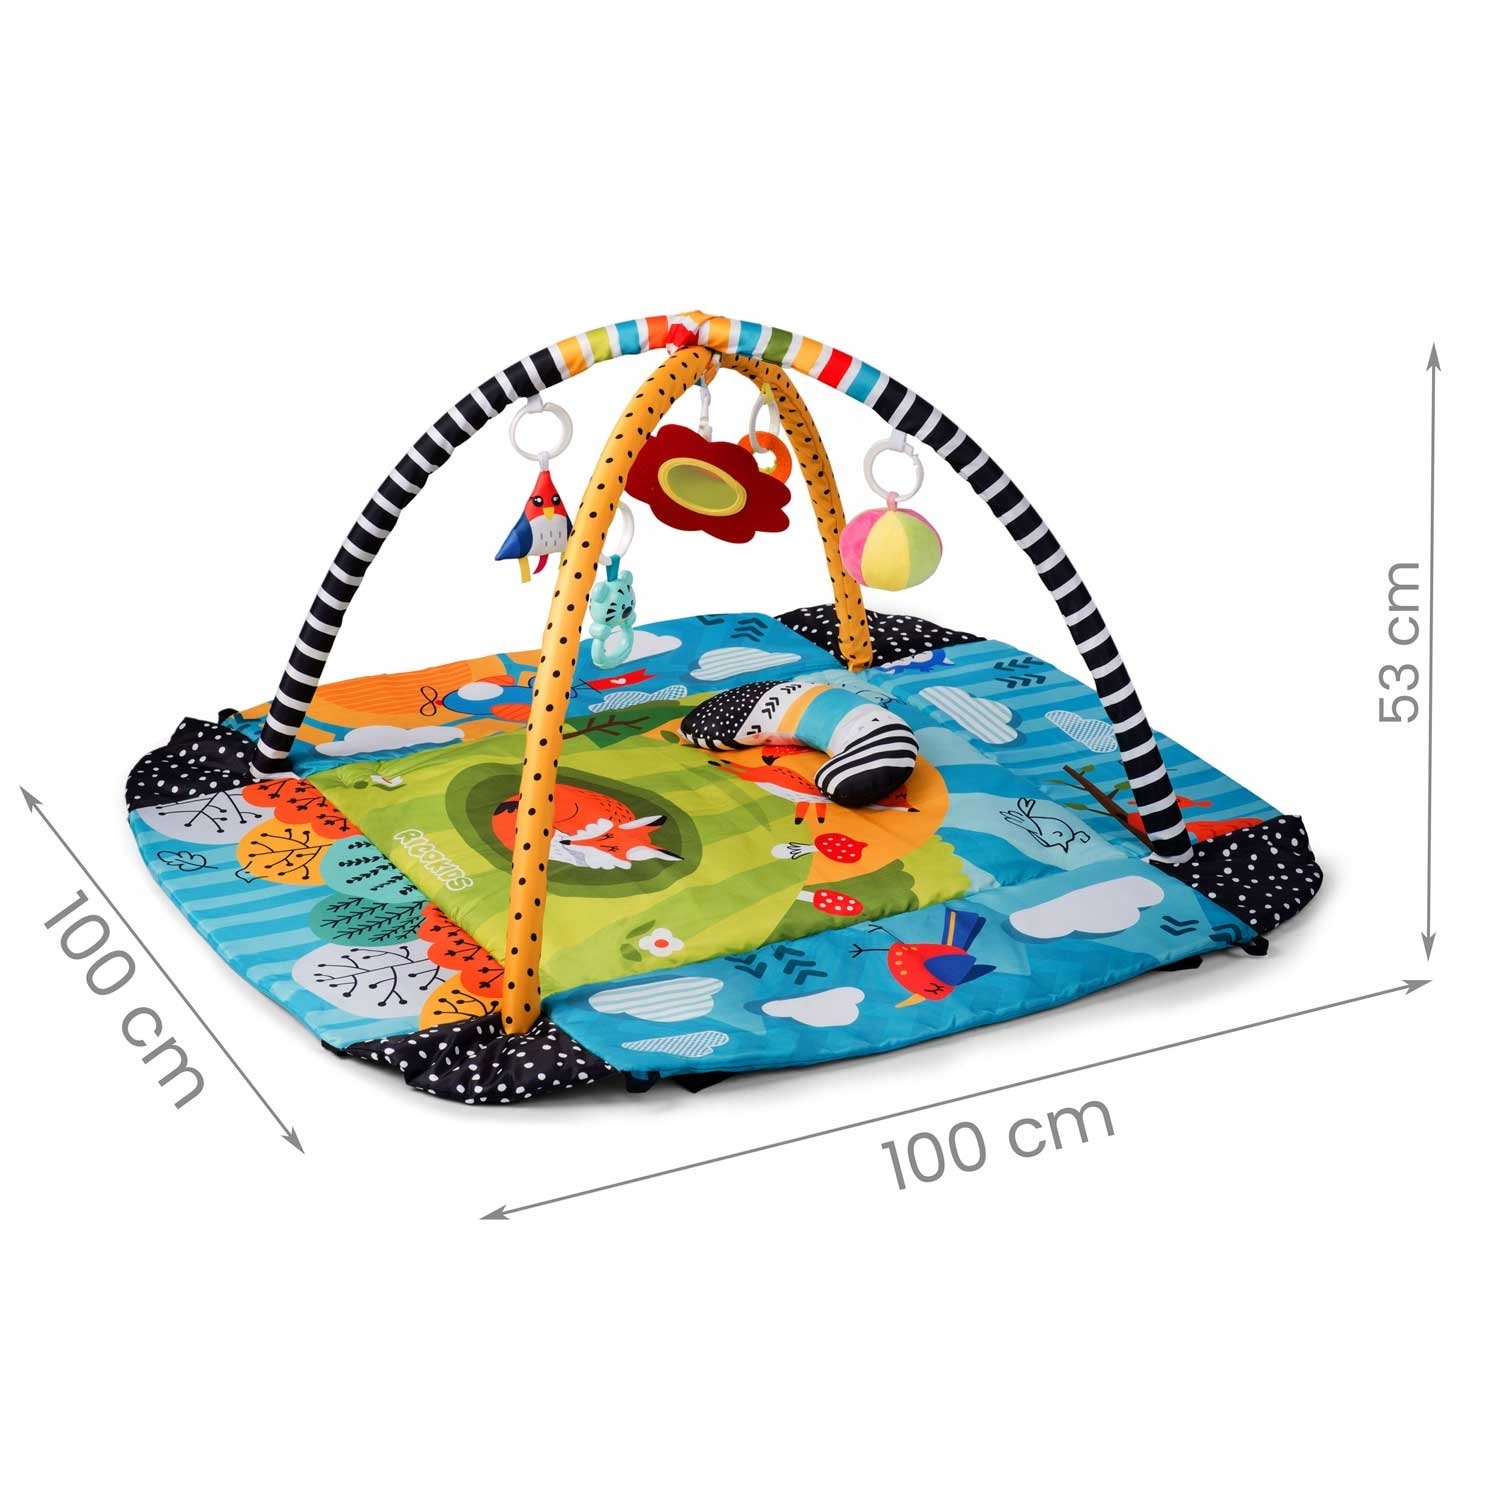 Інтерактивний навчальний килимок для немовлят - манеж Сертифікати, відгуки, схвалення CE EN 71